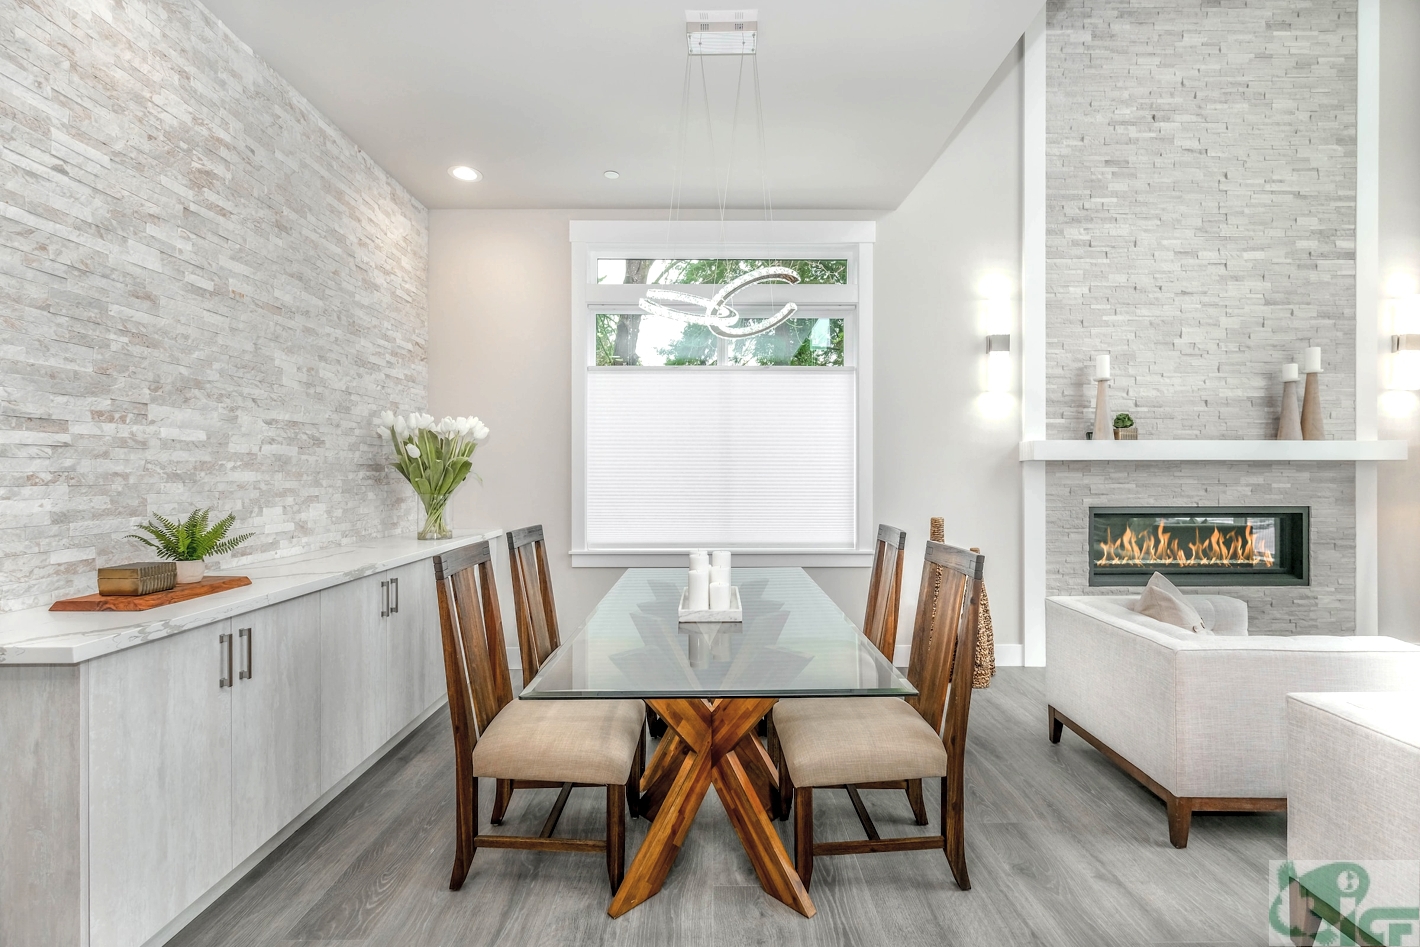 Правильный выбор стола может значительно улучшить внешний вид вашего дома и создать уютную атмосферу.